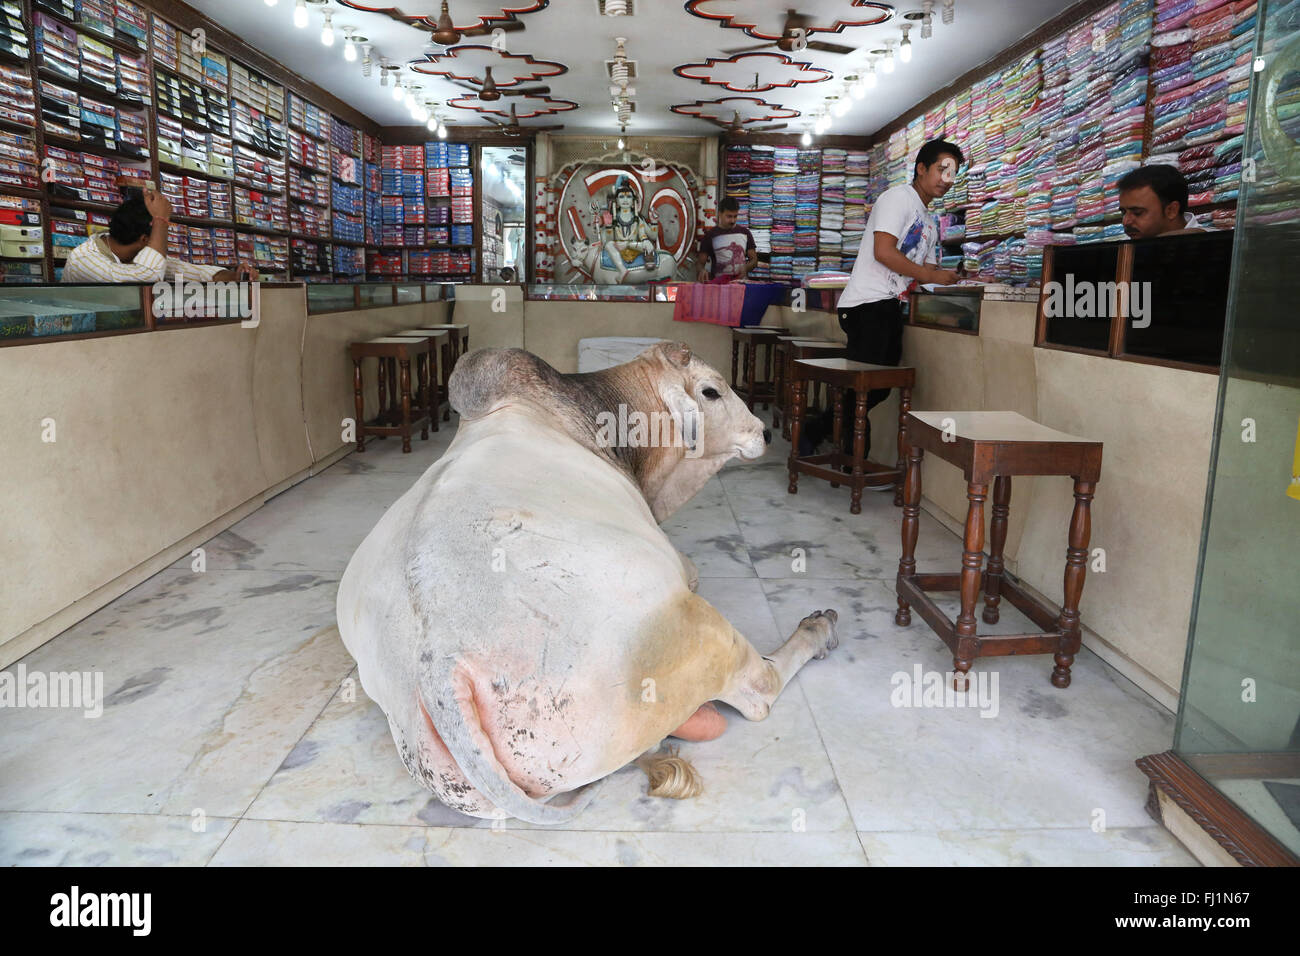 Ein riesiger Stier legt in einem Seide shop in Varanasi, Indien - völlig ungewöhnlich offenen Szene - Incredible India! Stockfoto